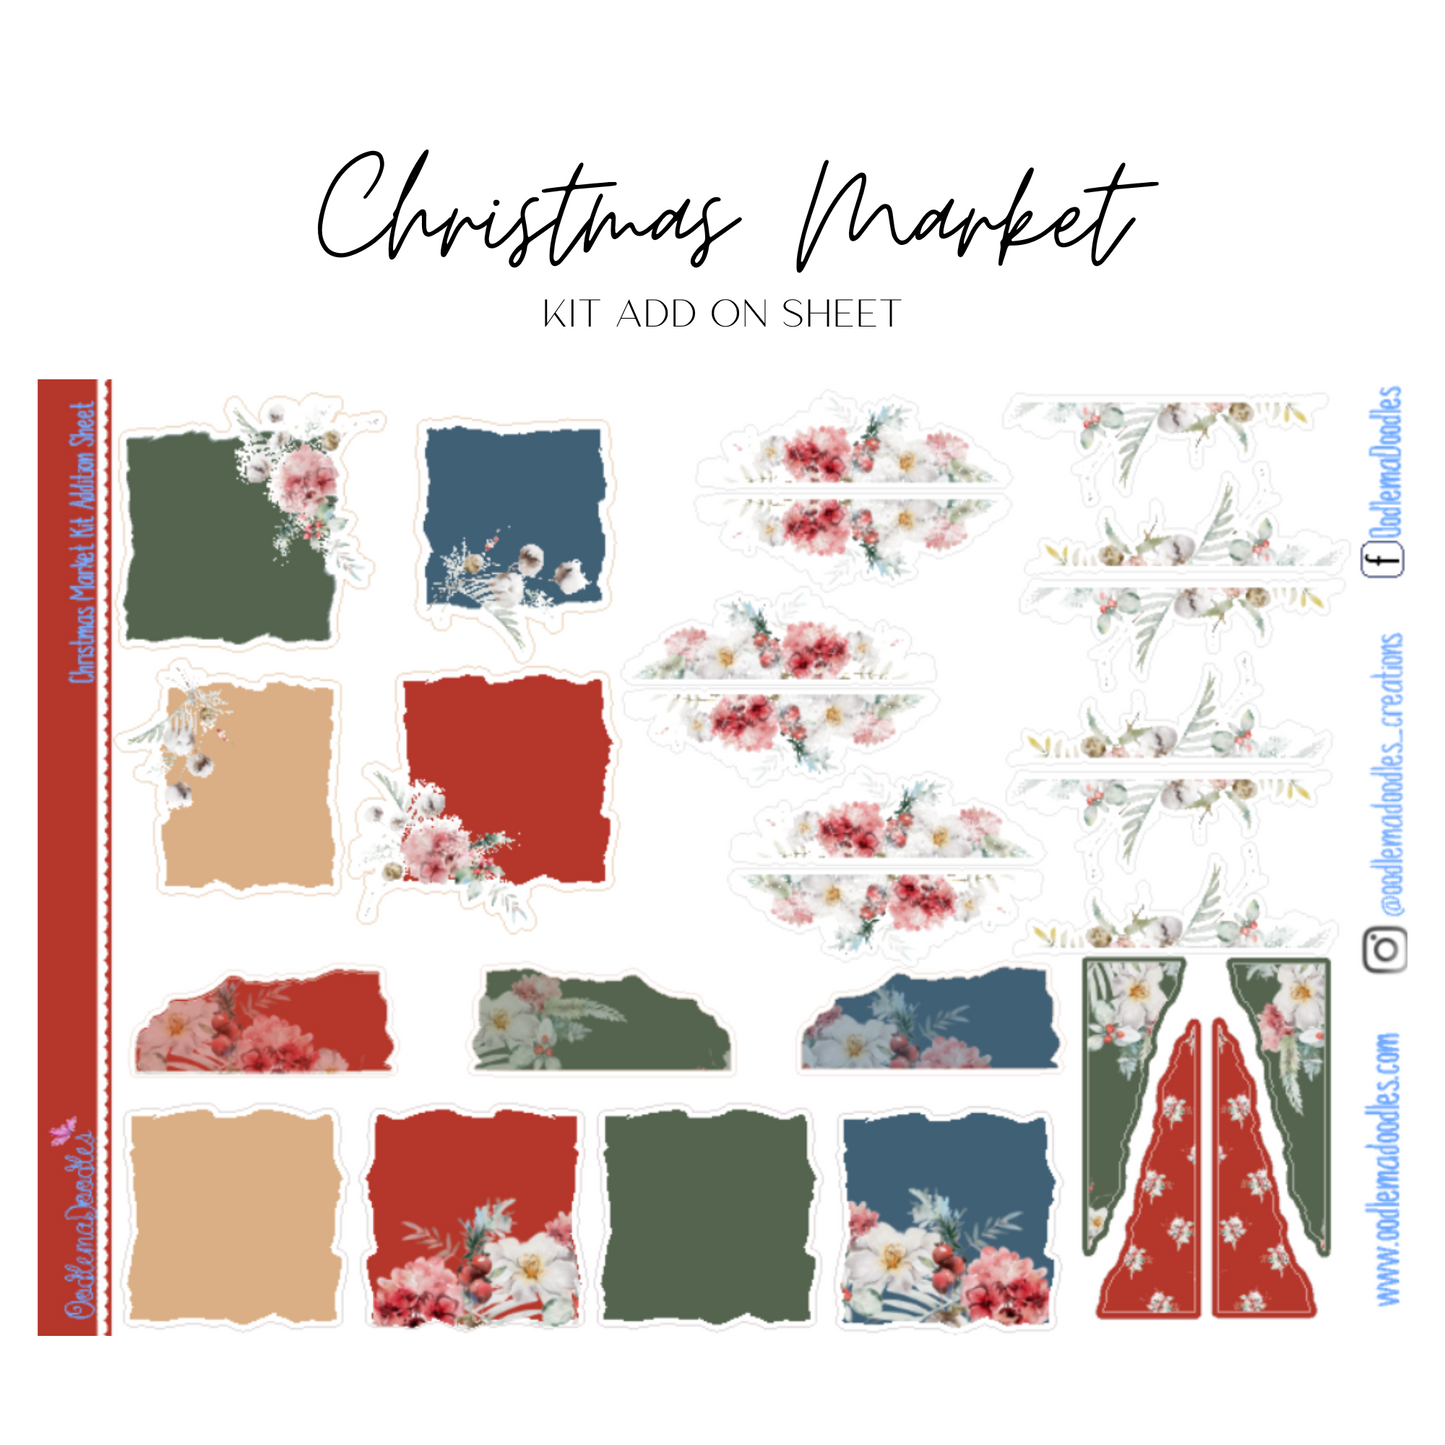 Christmas Market Addon & Extra Washi Options